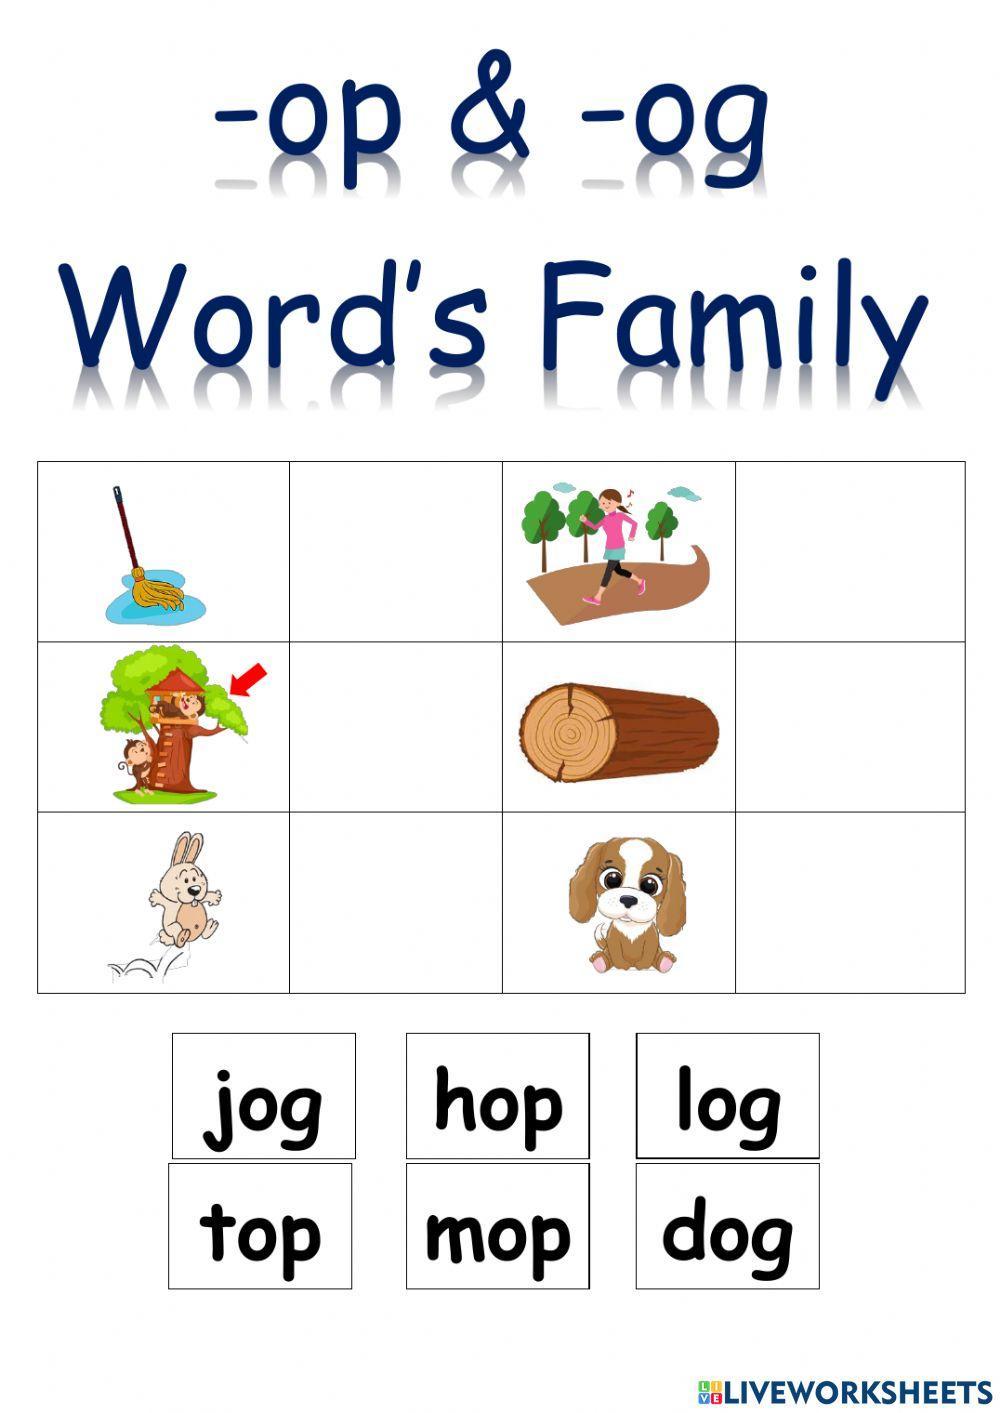 Word Family - ob - Worksheet Digital